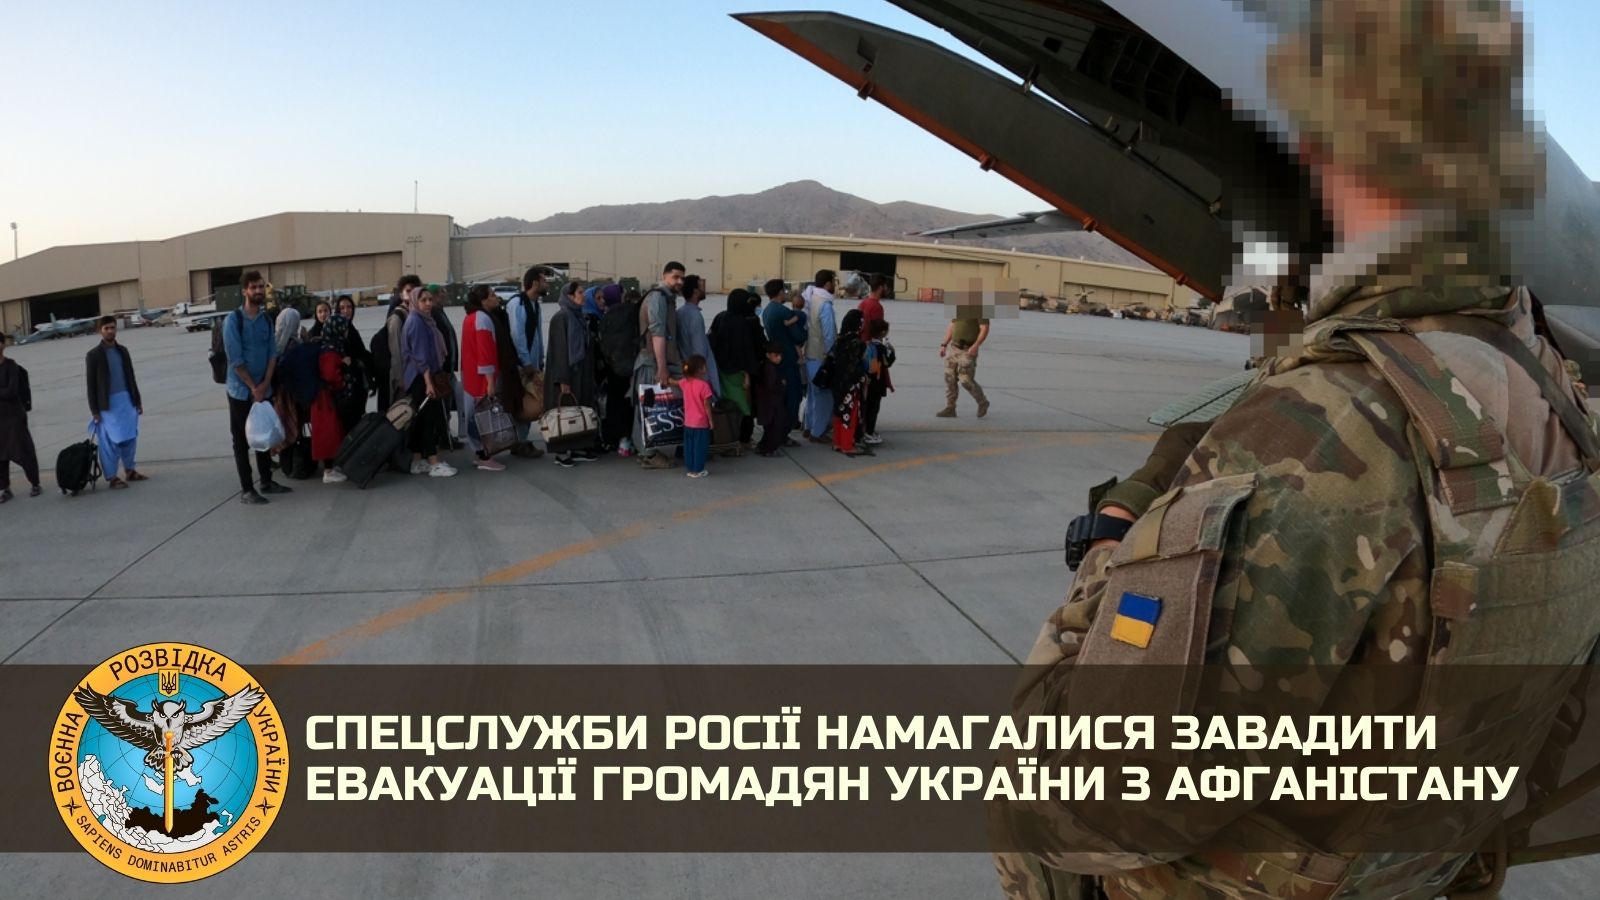 Спецслужби Росії намагалися завадити евакуації громадян України з Афганістану!